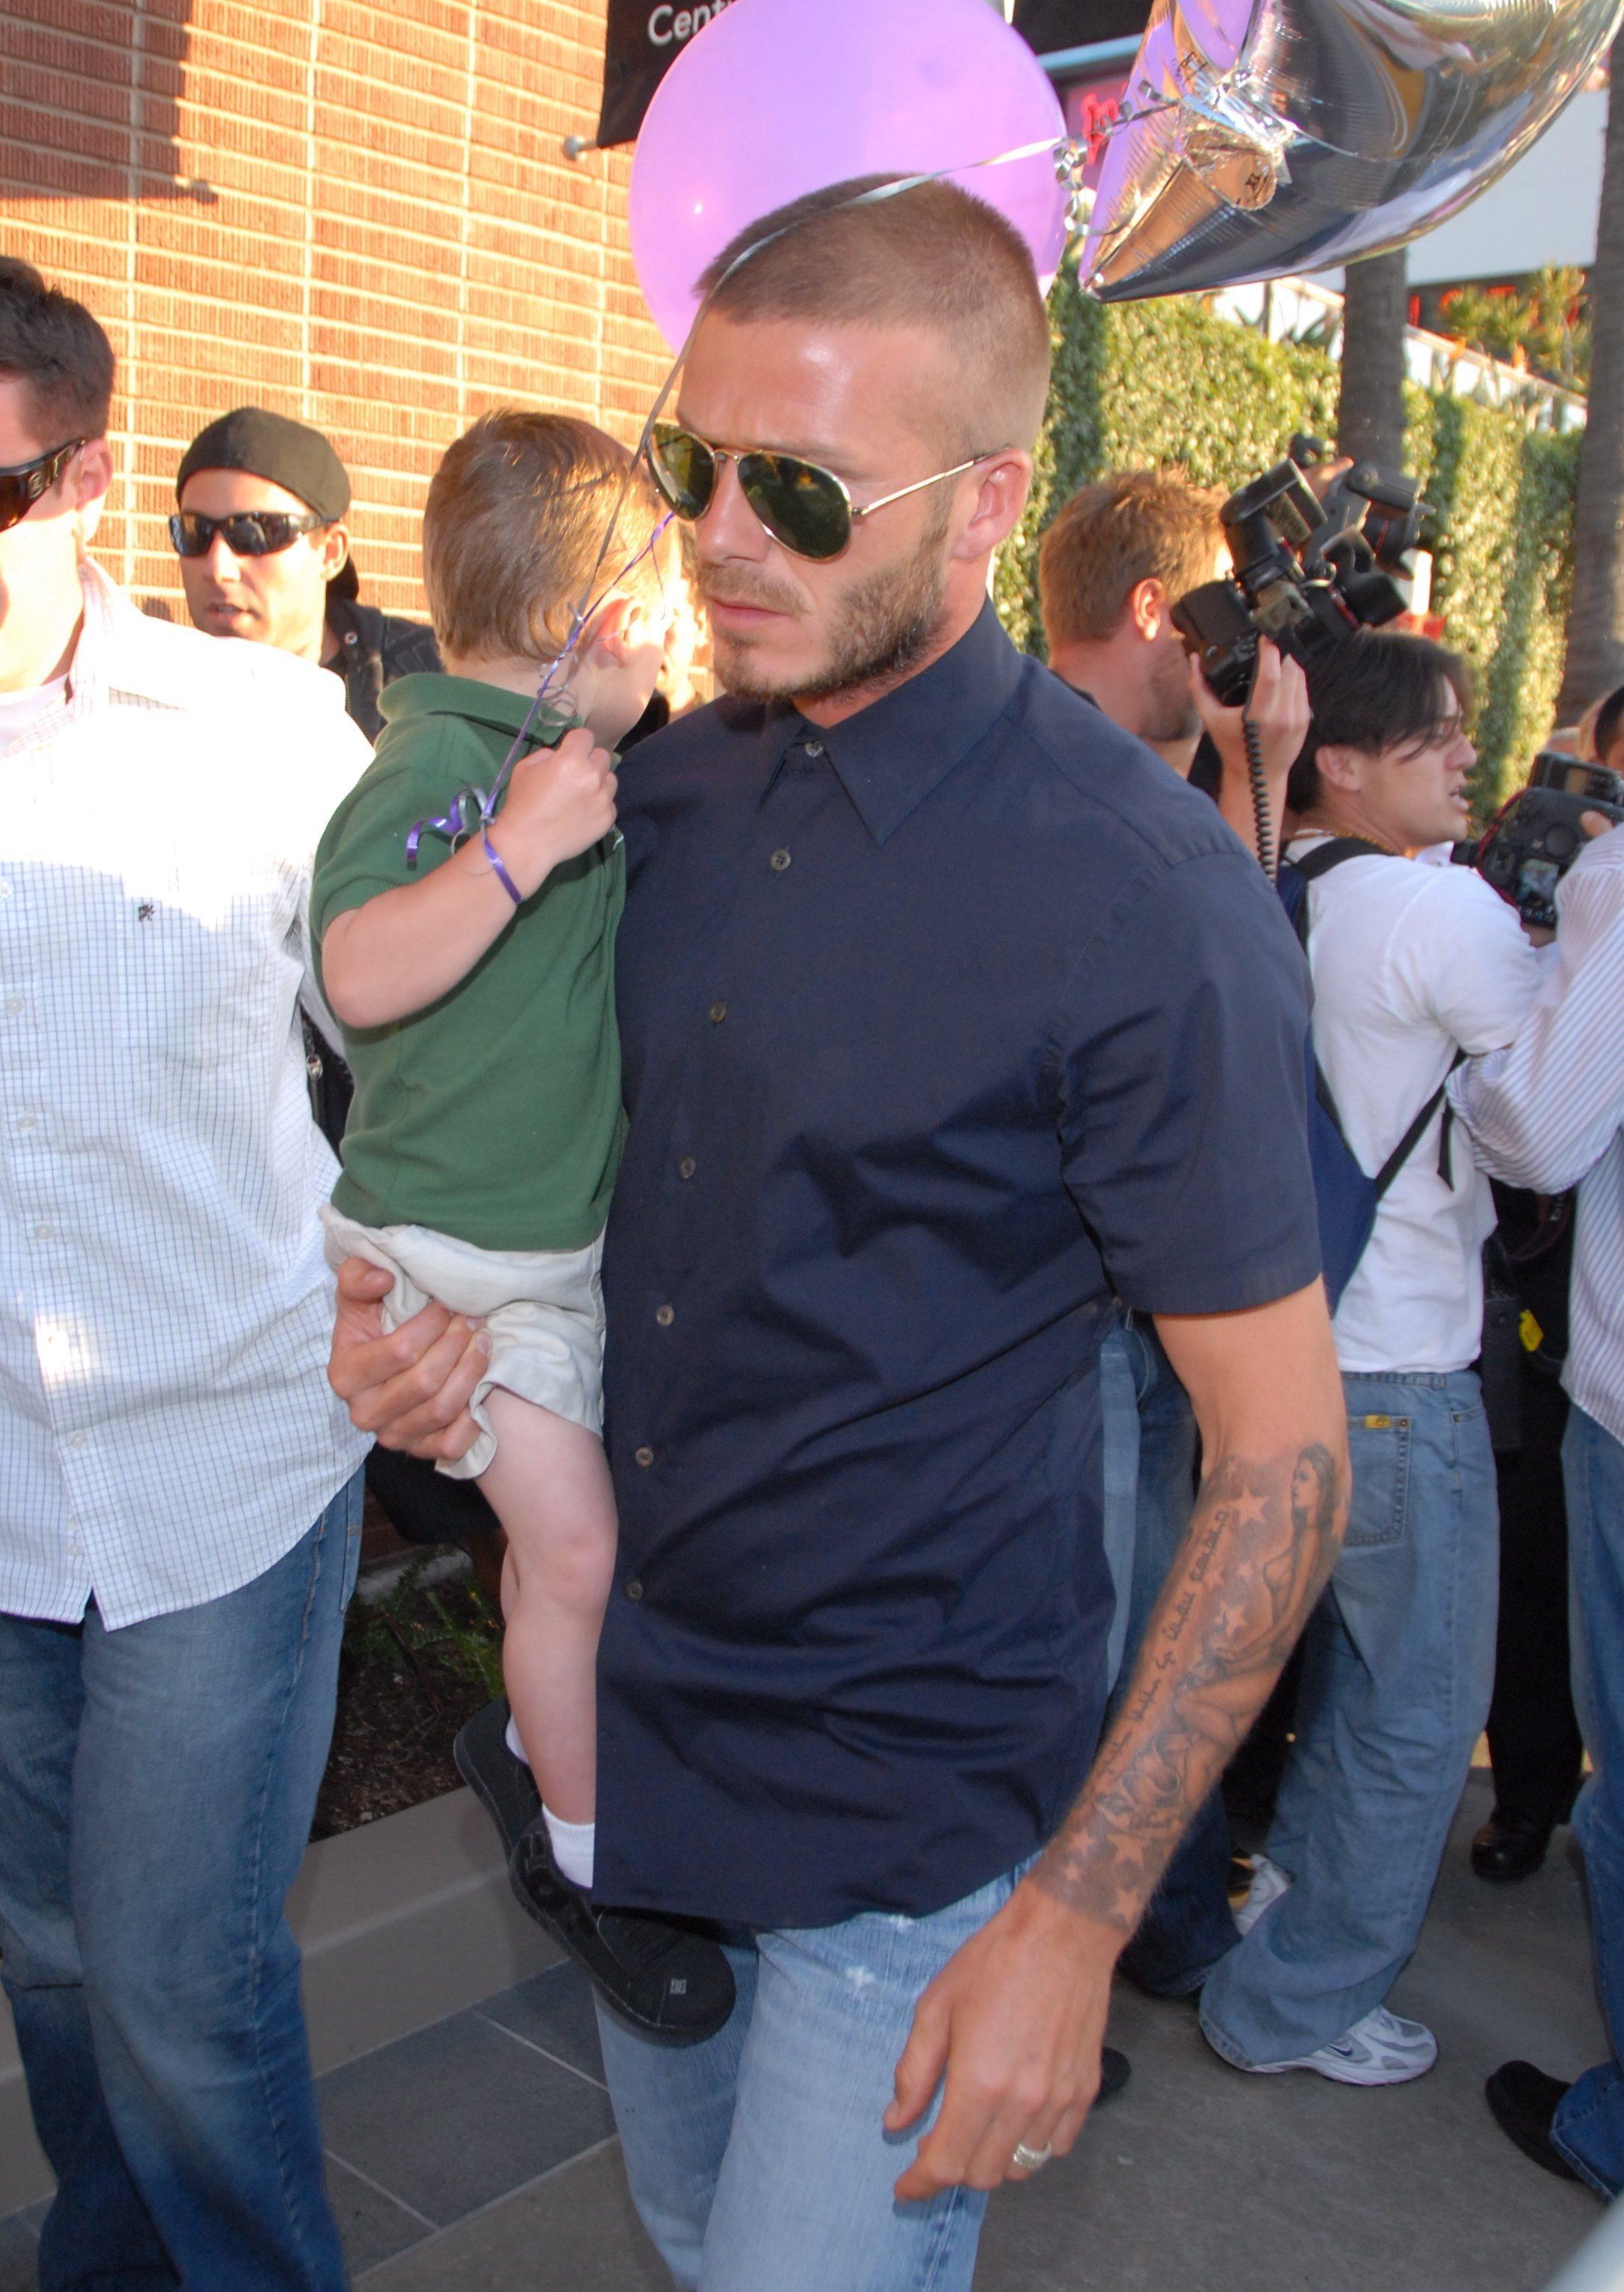 David Beckham, cu unul dintre copiii lui in brate, camasa neagra